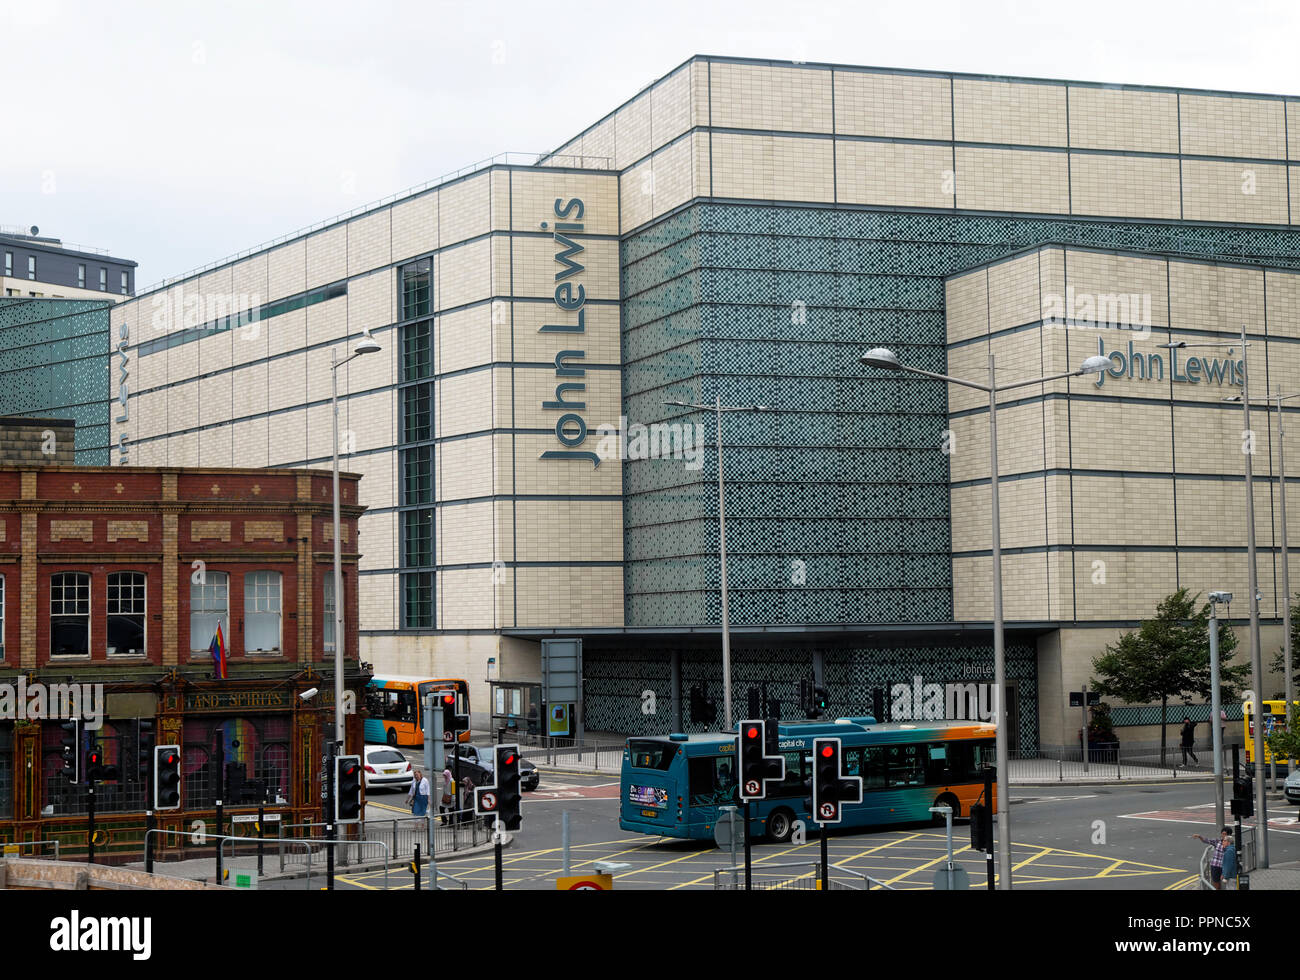 Vista esterna di John Lewis department store in Cardiff City Centre e il traffico della strada con autobus di Cardiff vista dal treno Wales UK KATHY DEWITT Foto Stock